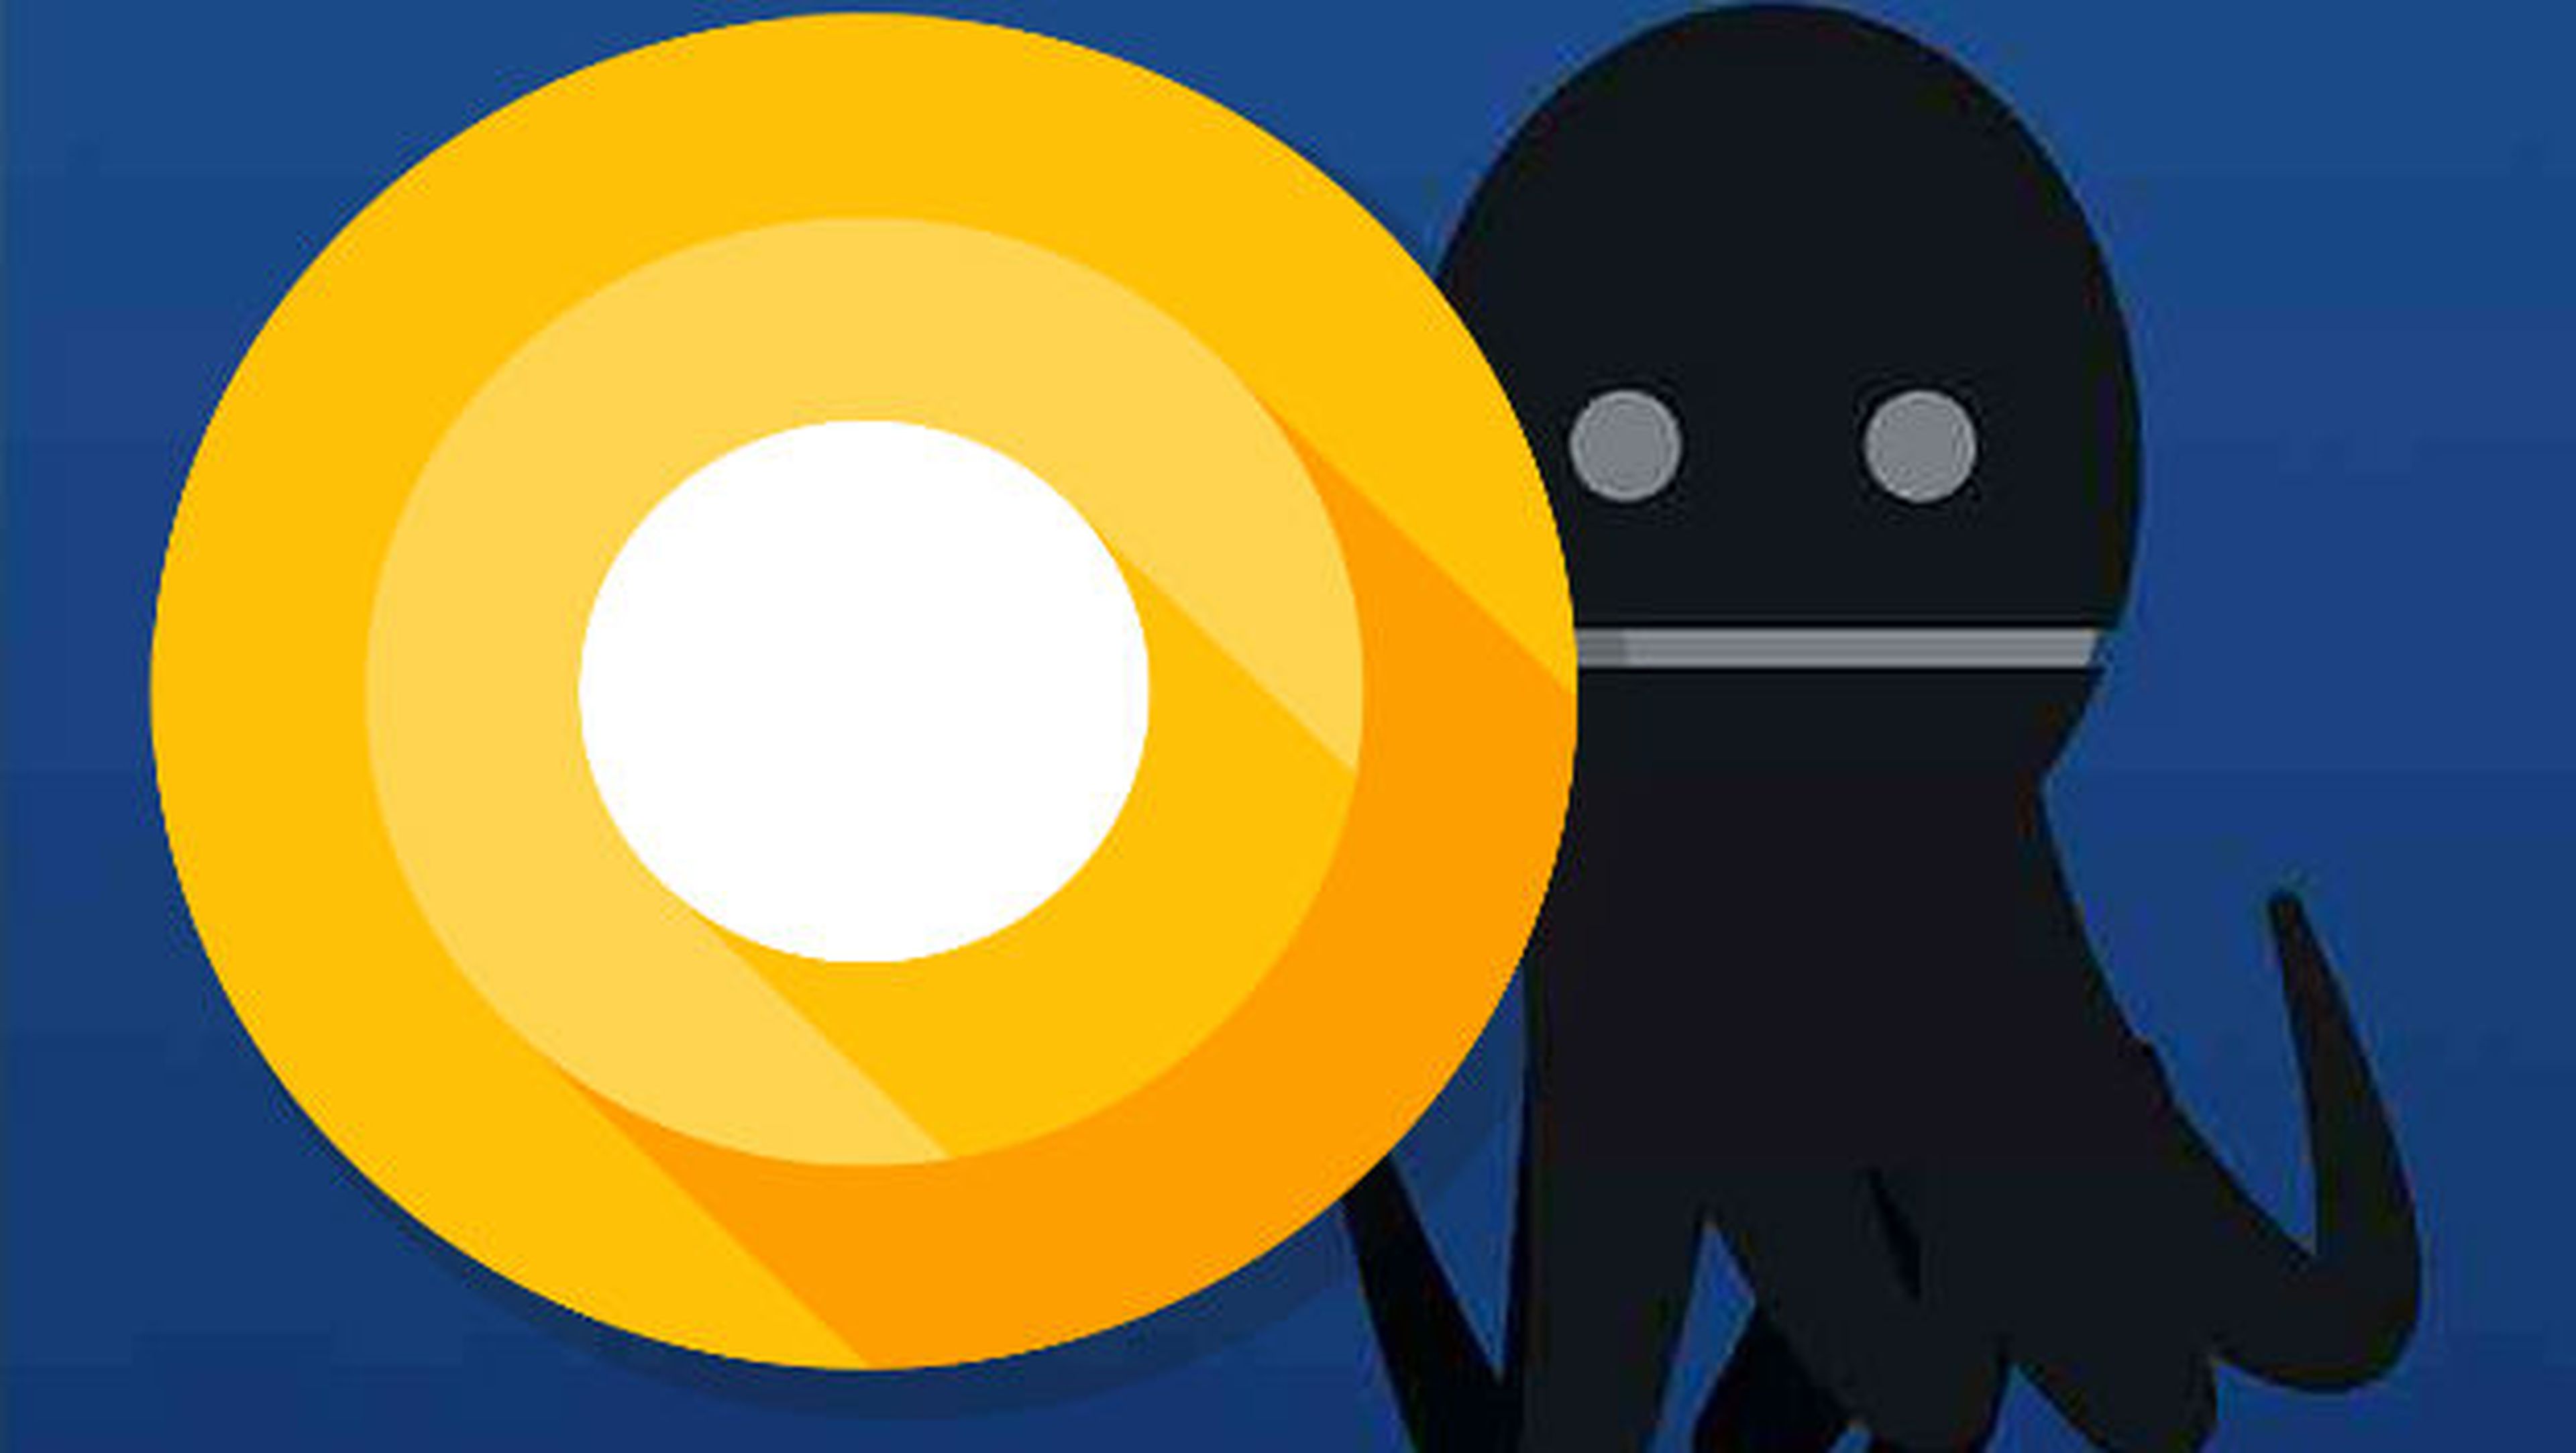 La última versión de Android O antes de su lanzamiento definítivo ha escondido un pulpo en su easter egg